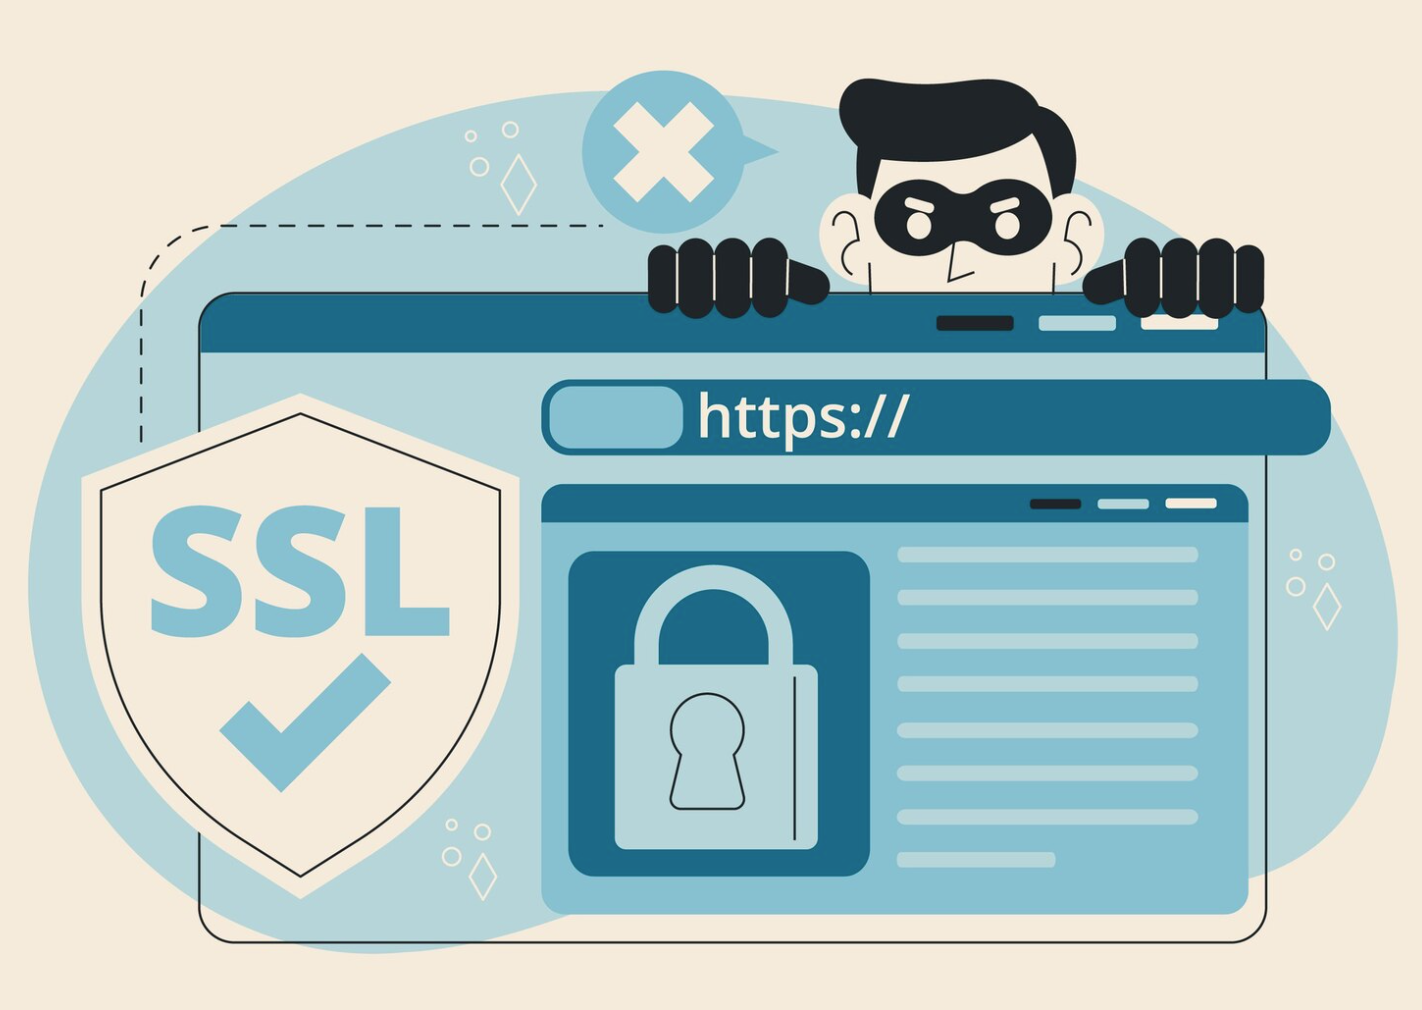 SSL-VPN